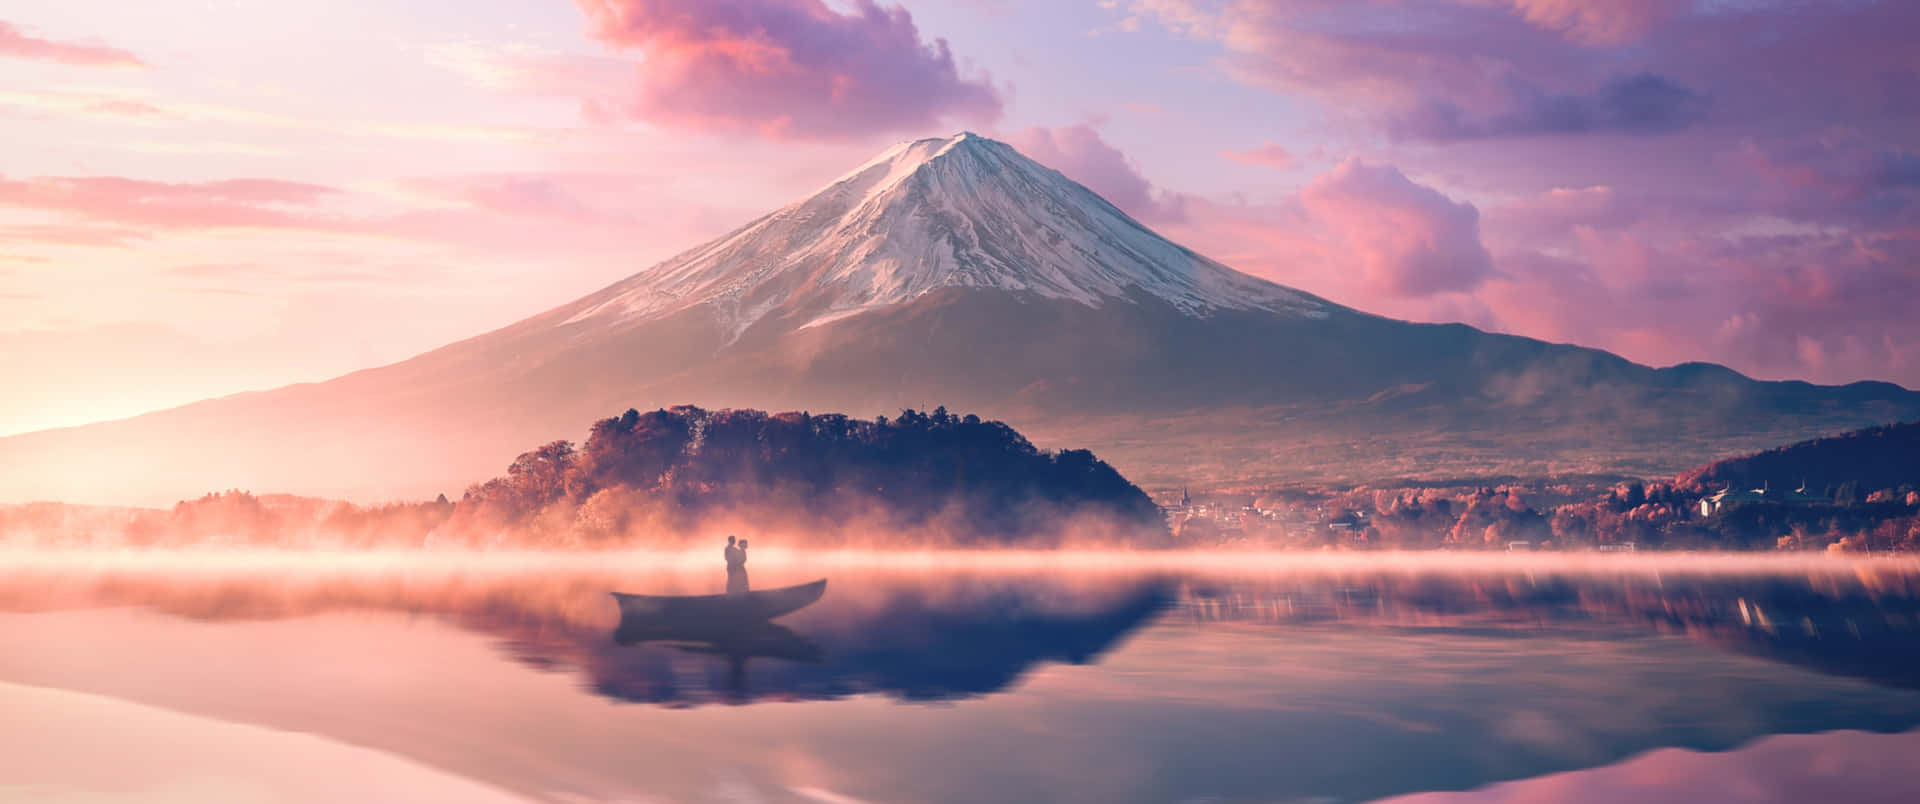 Älskandepå Båt Med Mount Fuji. Wallpaper